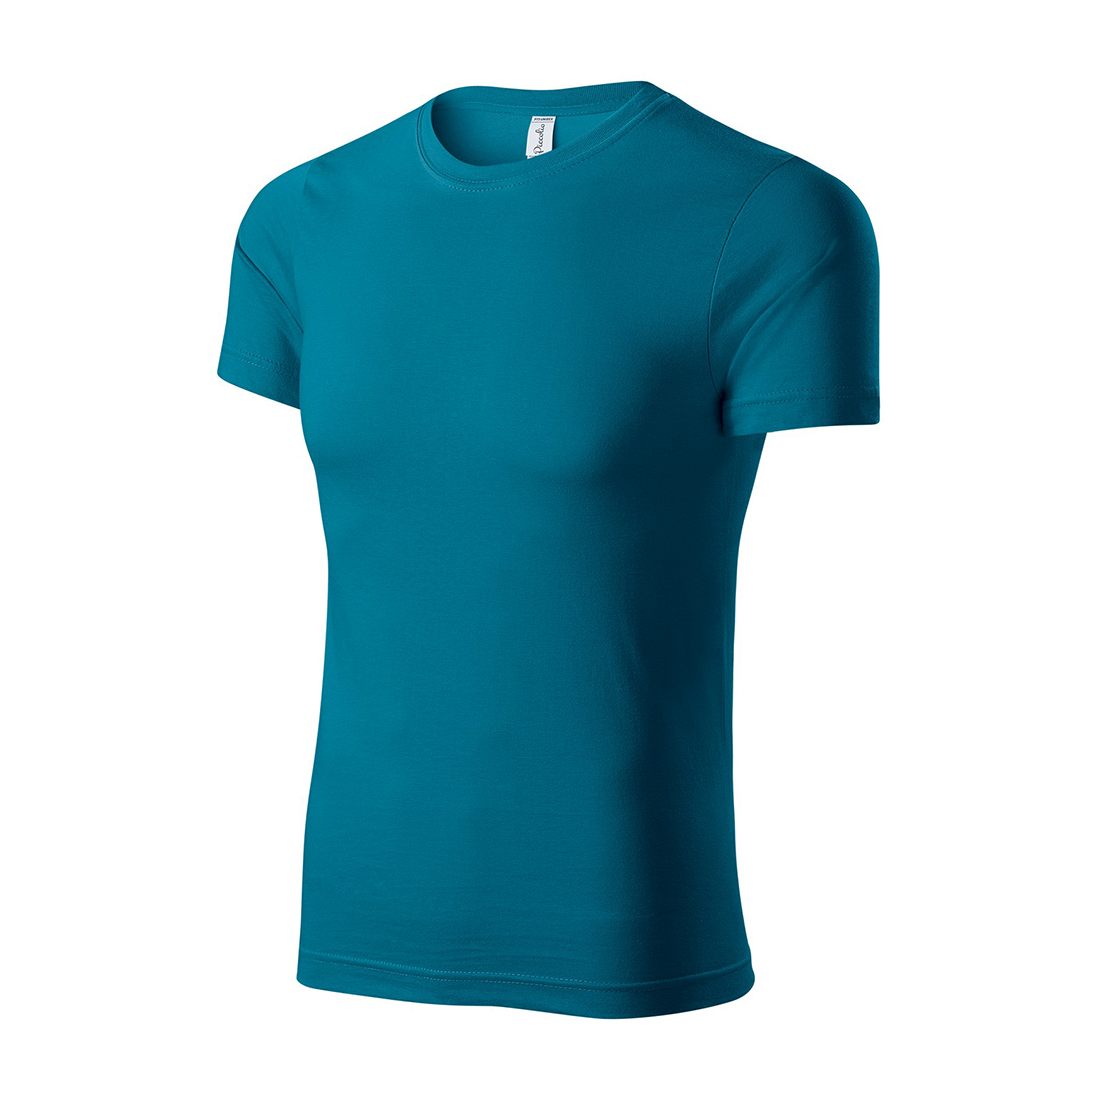 100% Cotton Unisex T-shirt - Safetywear